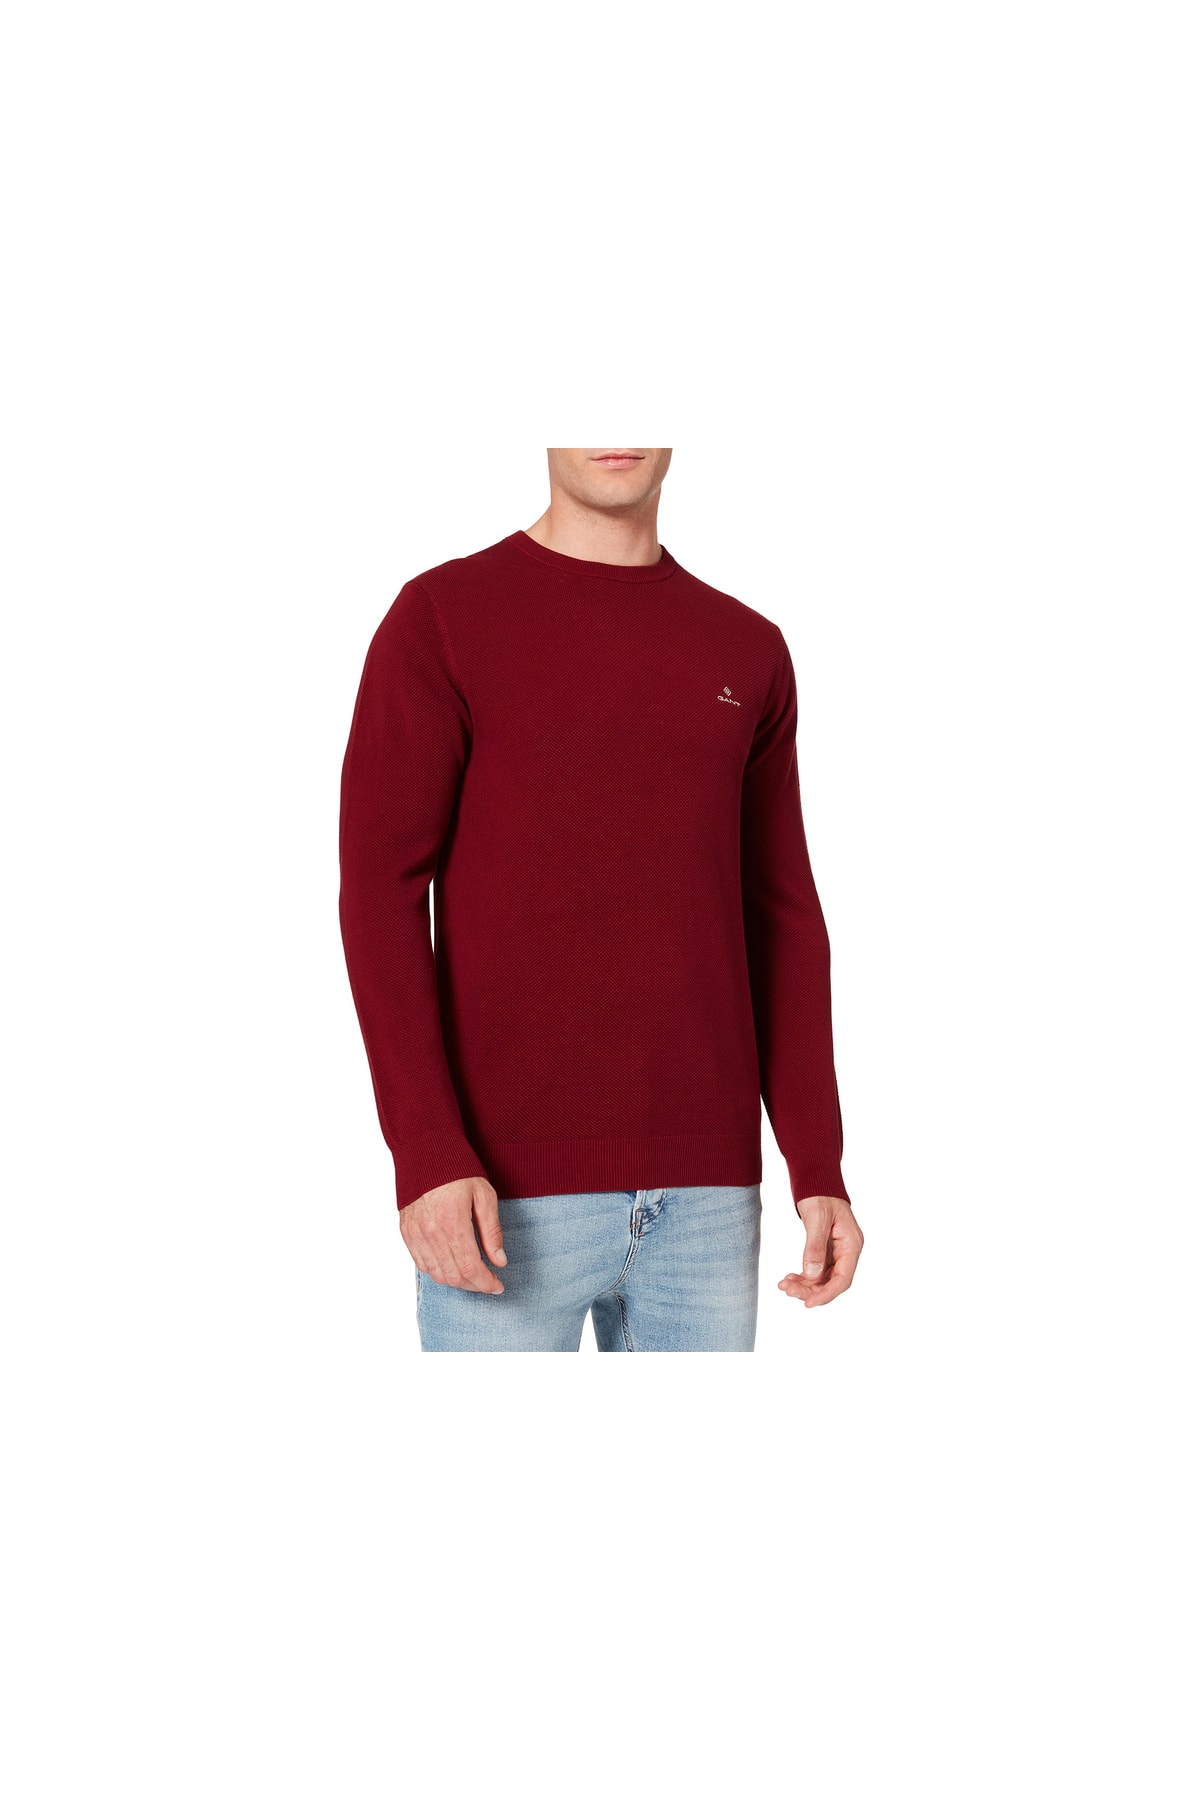 Gant Pullover Rot Regular Fit Fast ausverkauft